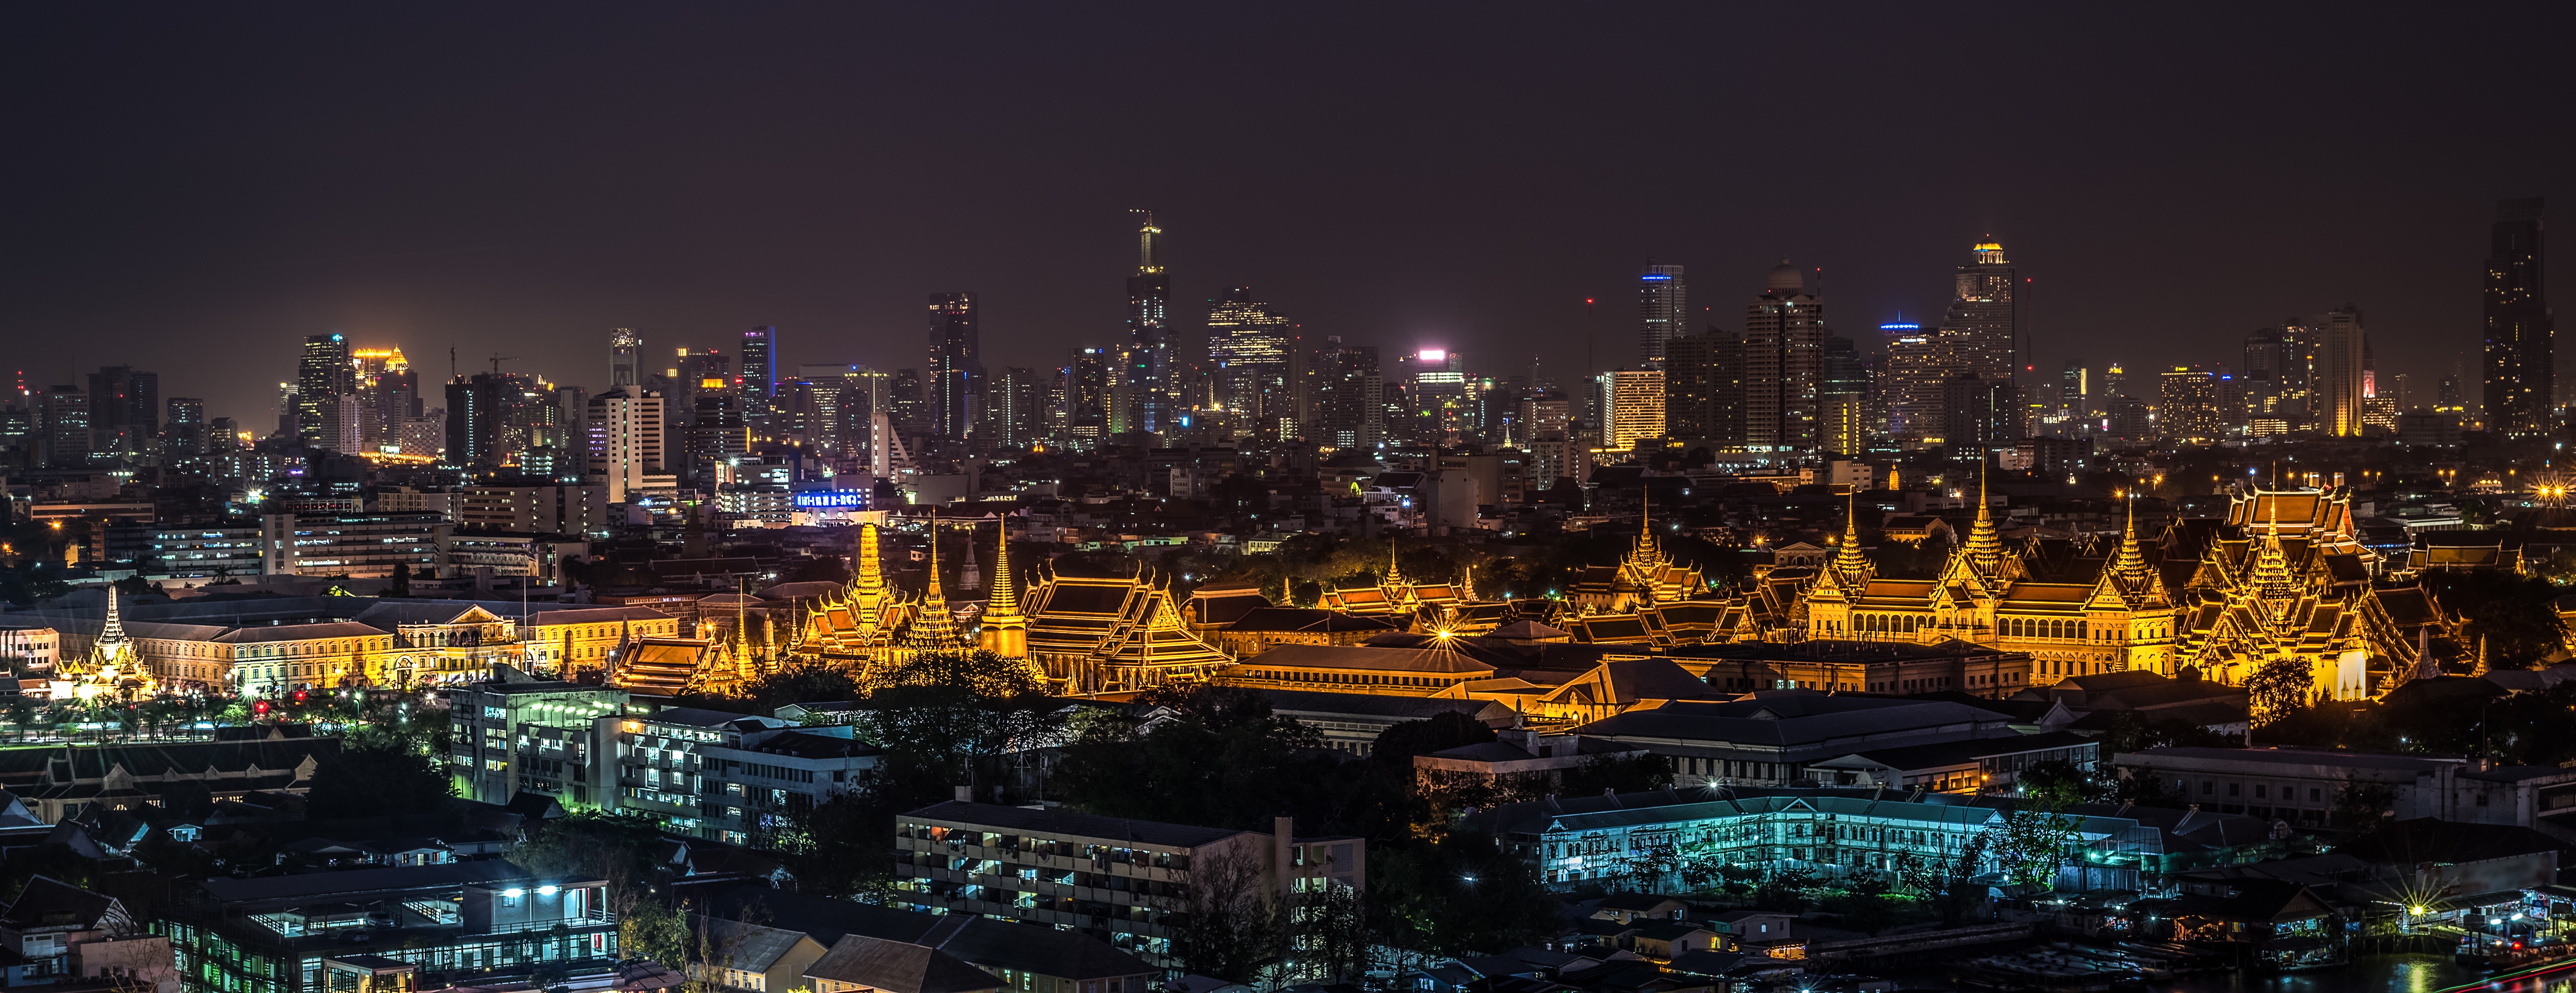 Популярные заставки и фоны Бангкок на компьютер